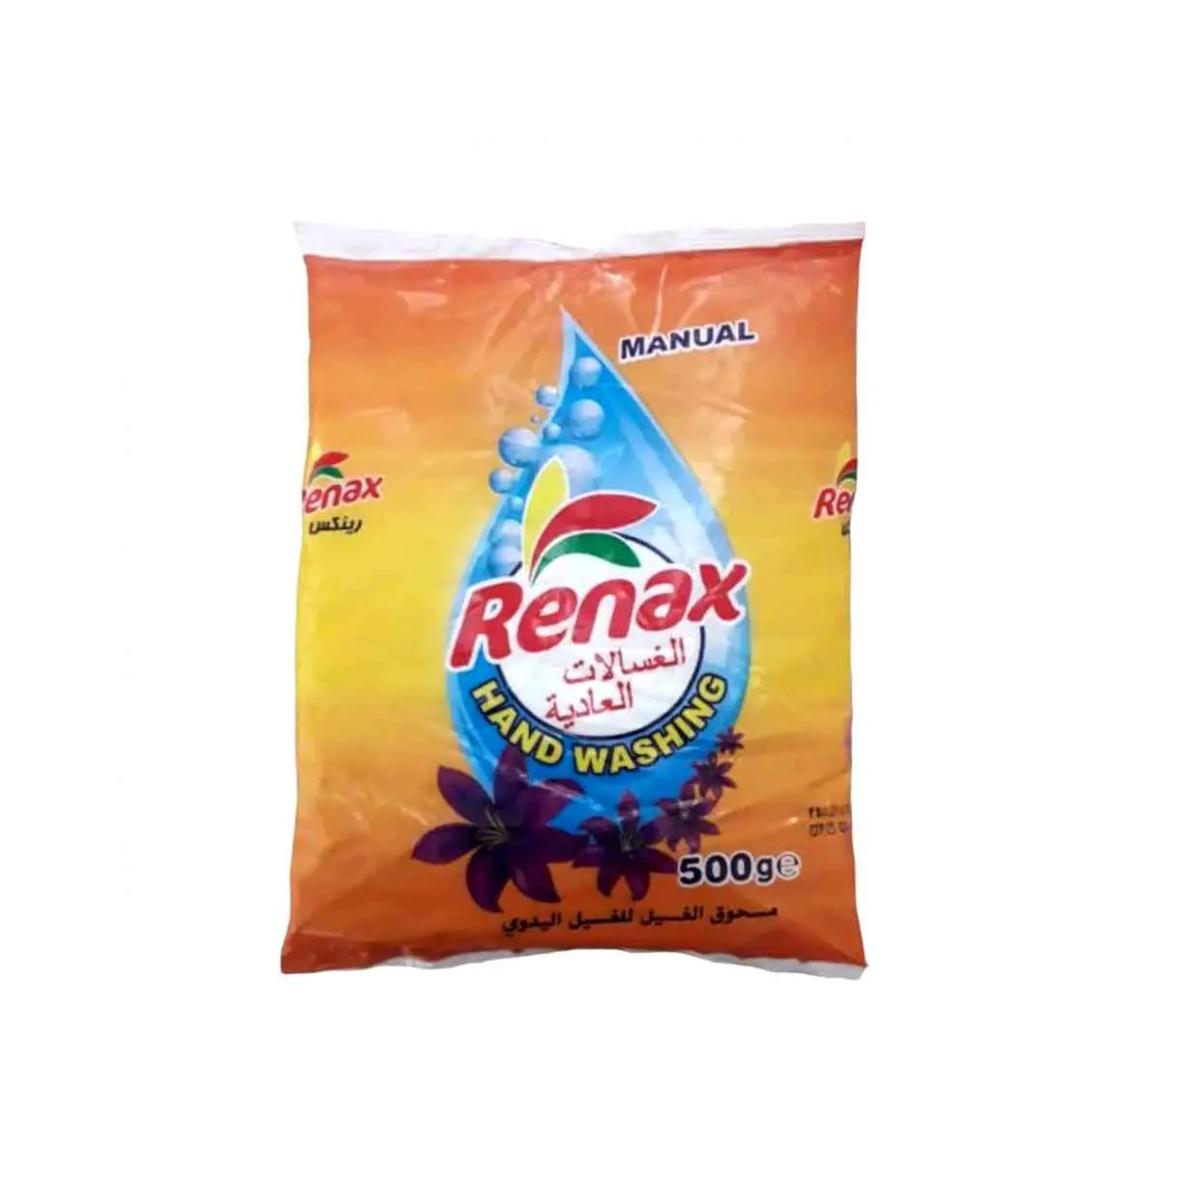 Detergente en polvo para ropa de cualquier tipo de color Renax (500 g / 1.1 lb) 